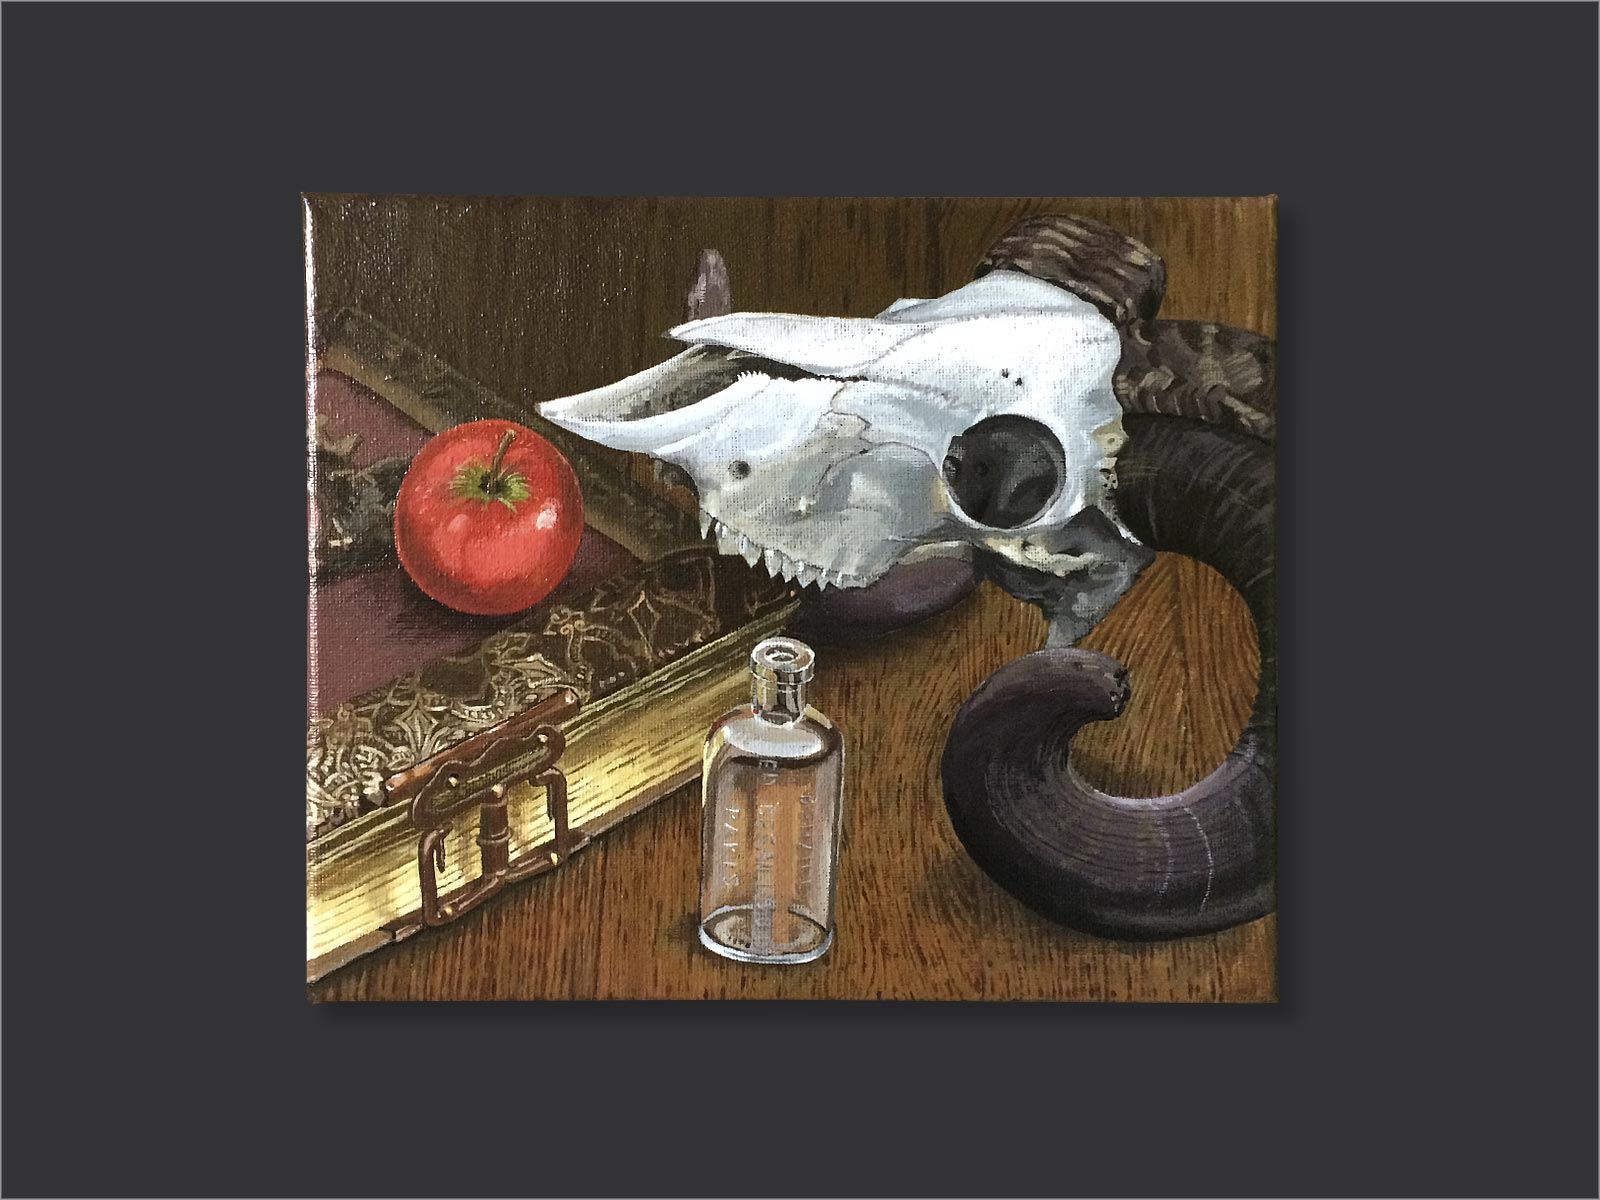 compositie van een antiek boek met slot met hierop een rode appel, met een klein glazen flesje en de schedel van een ram